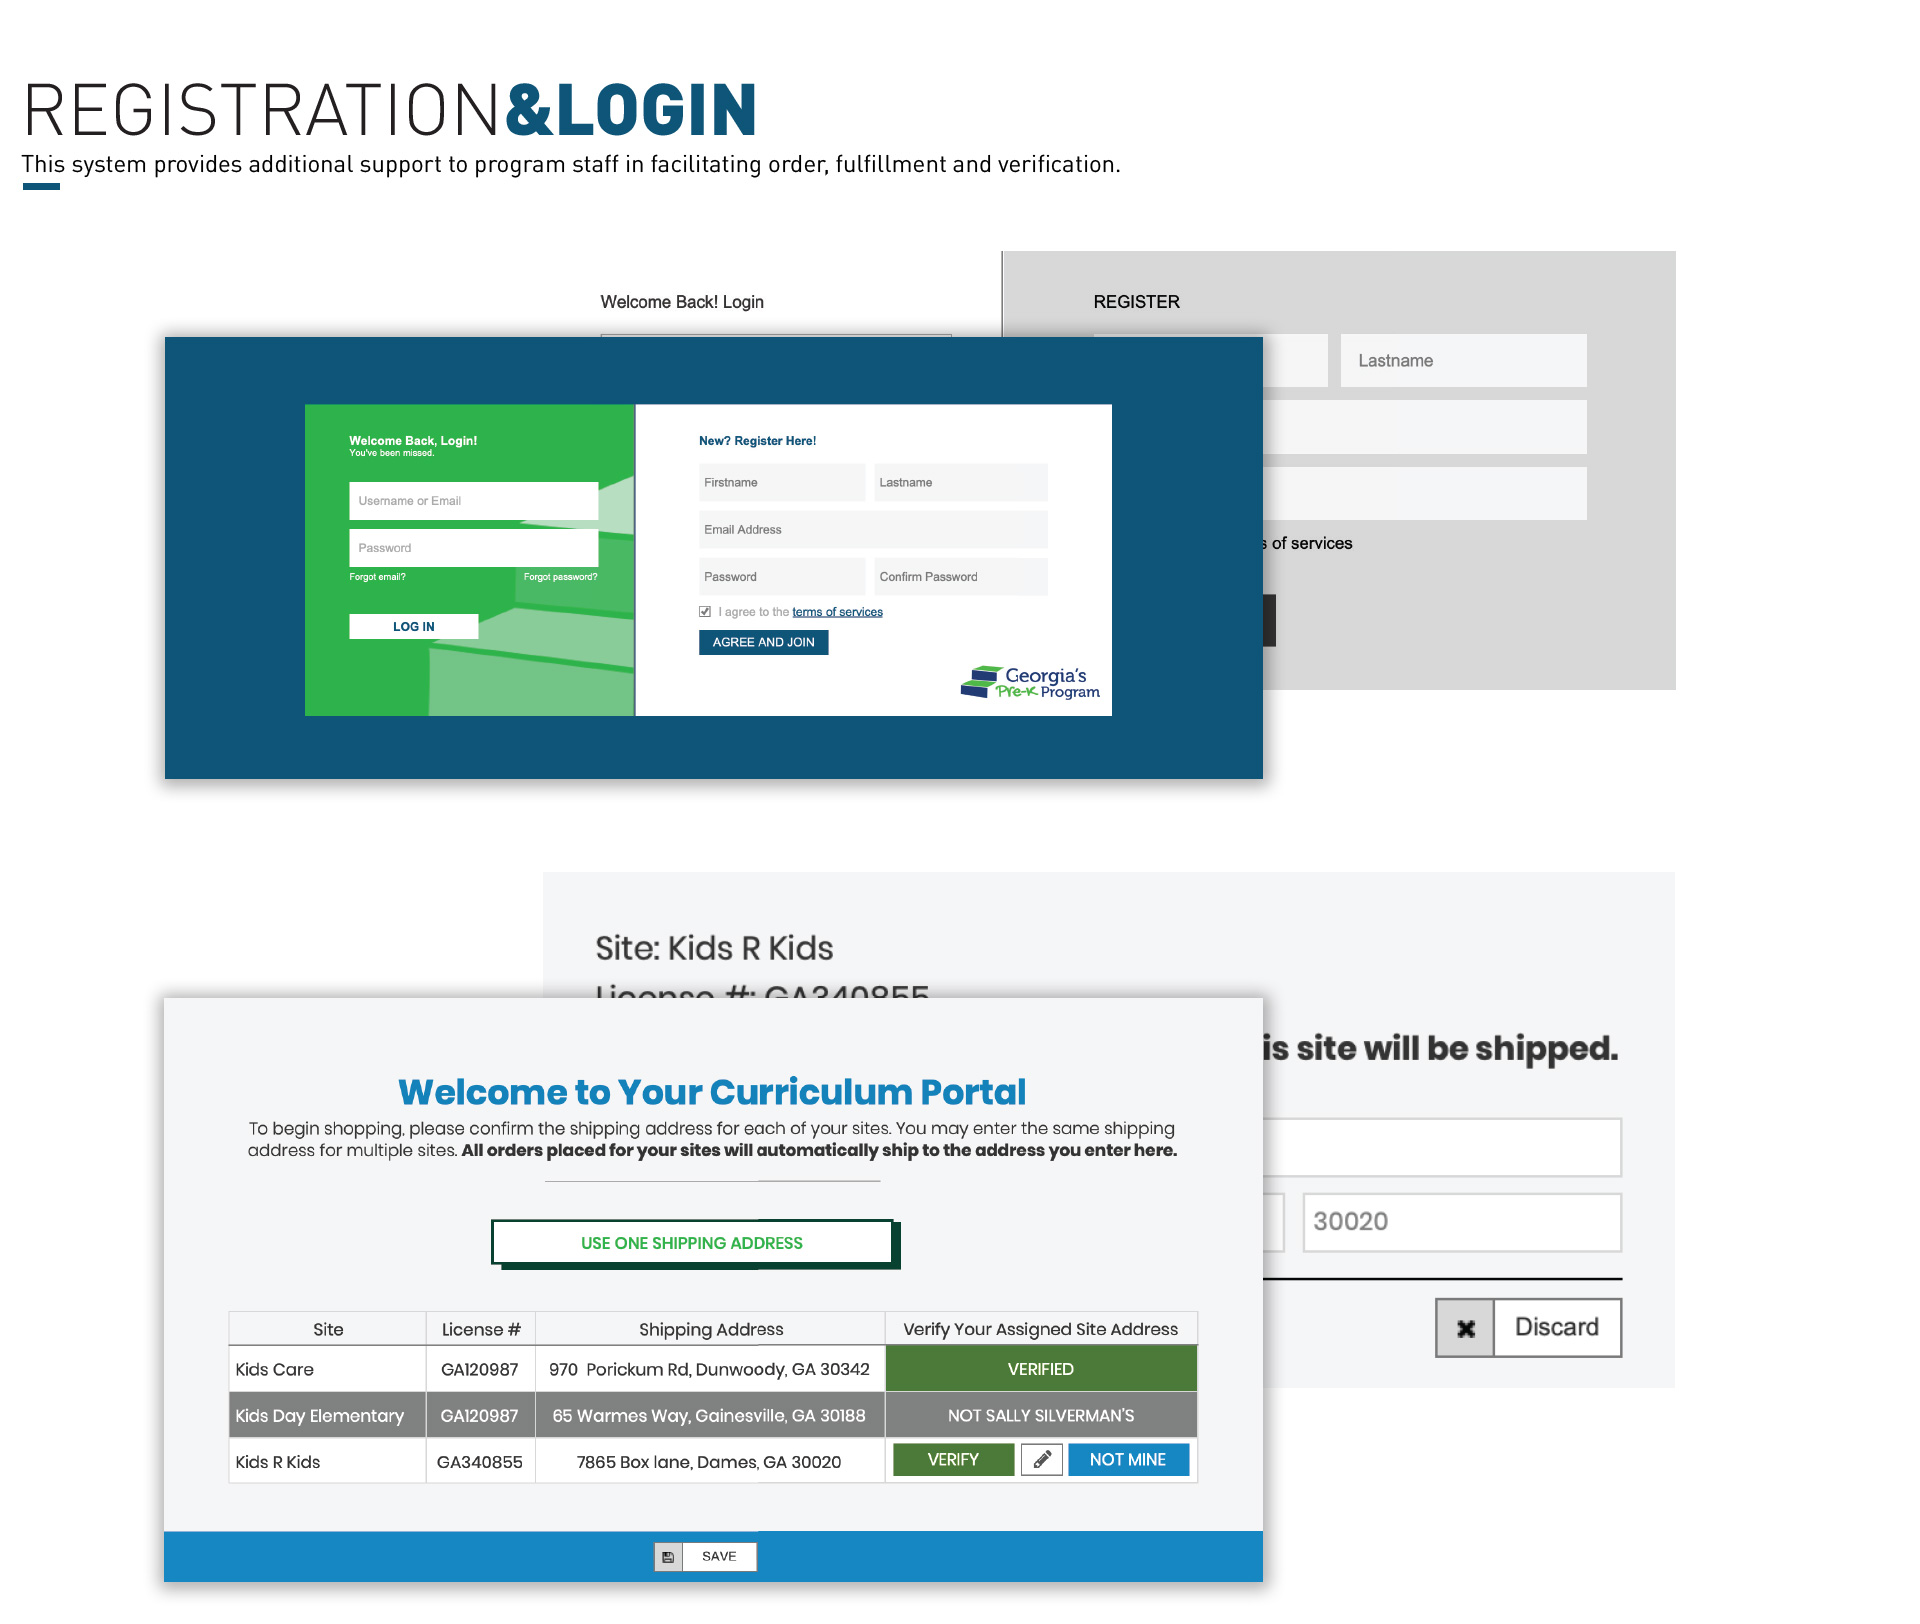 Registration and Login